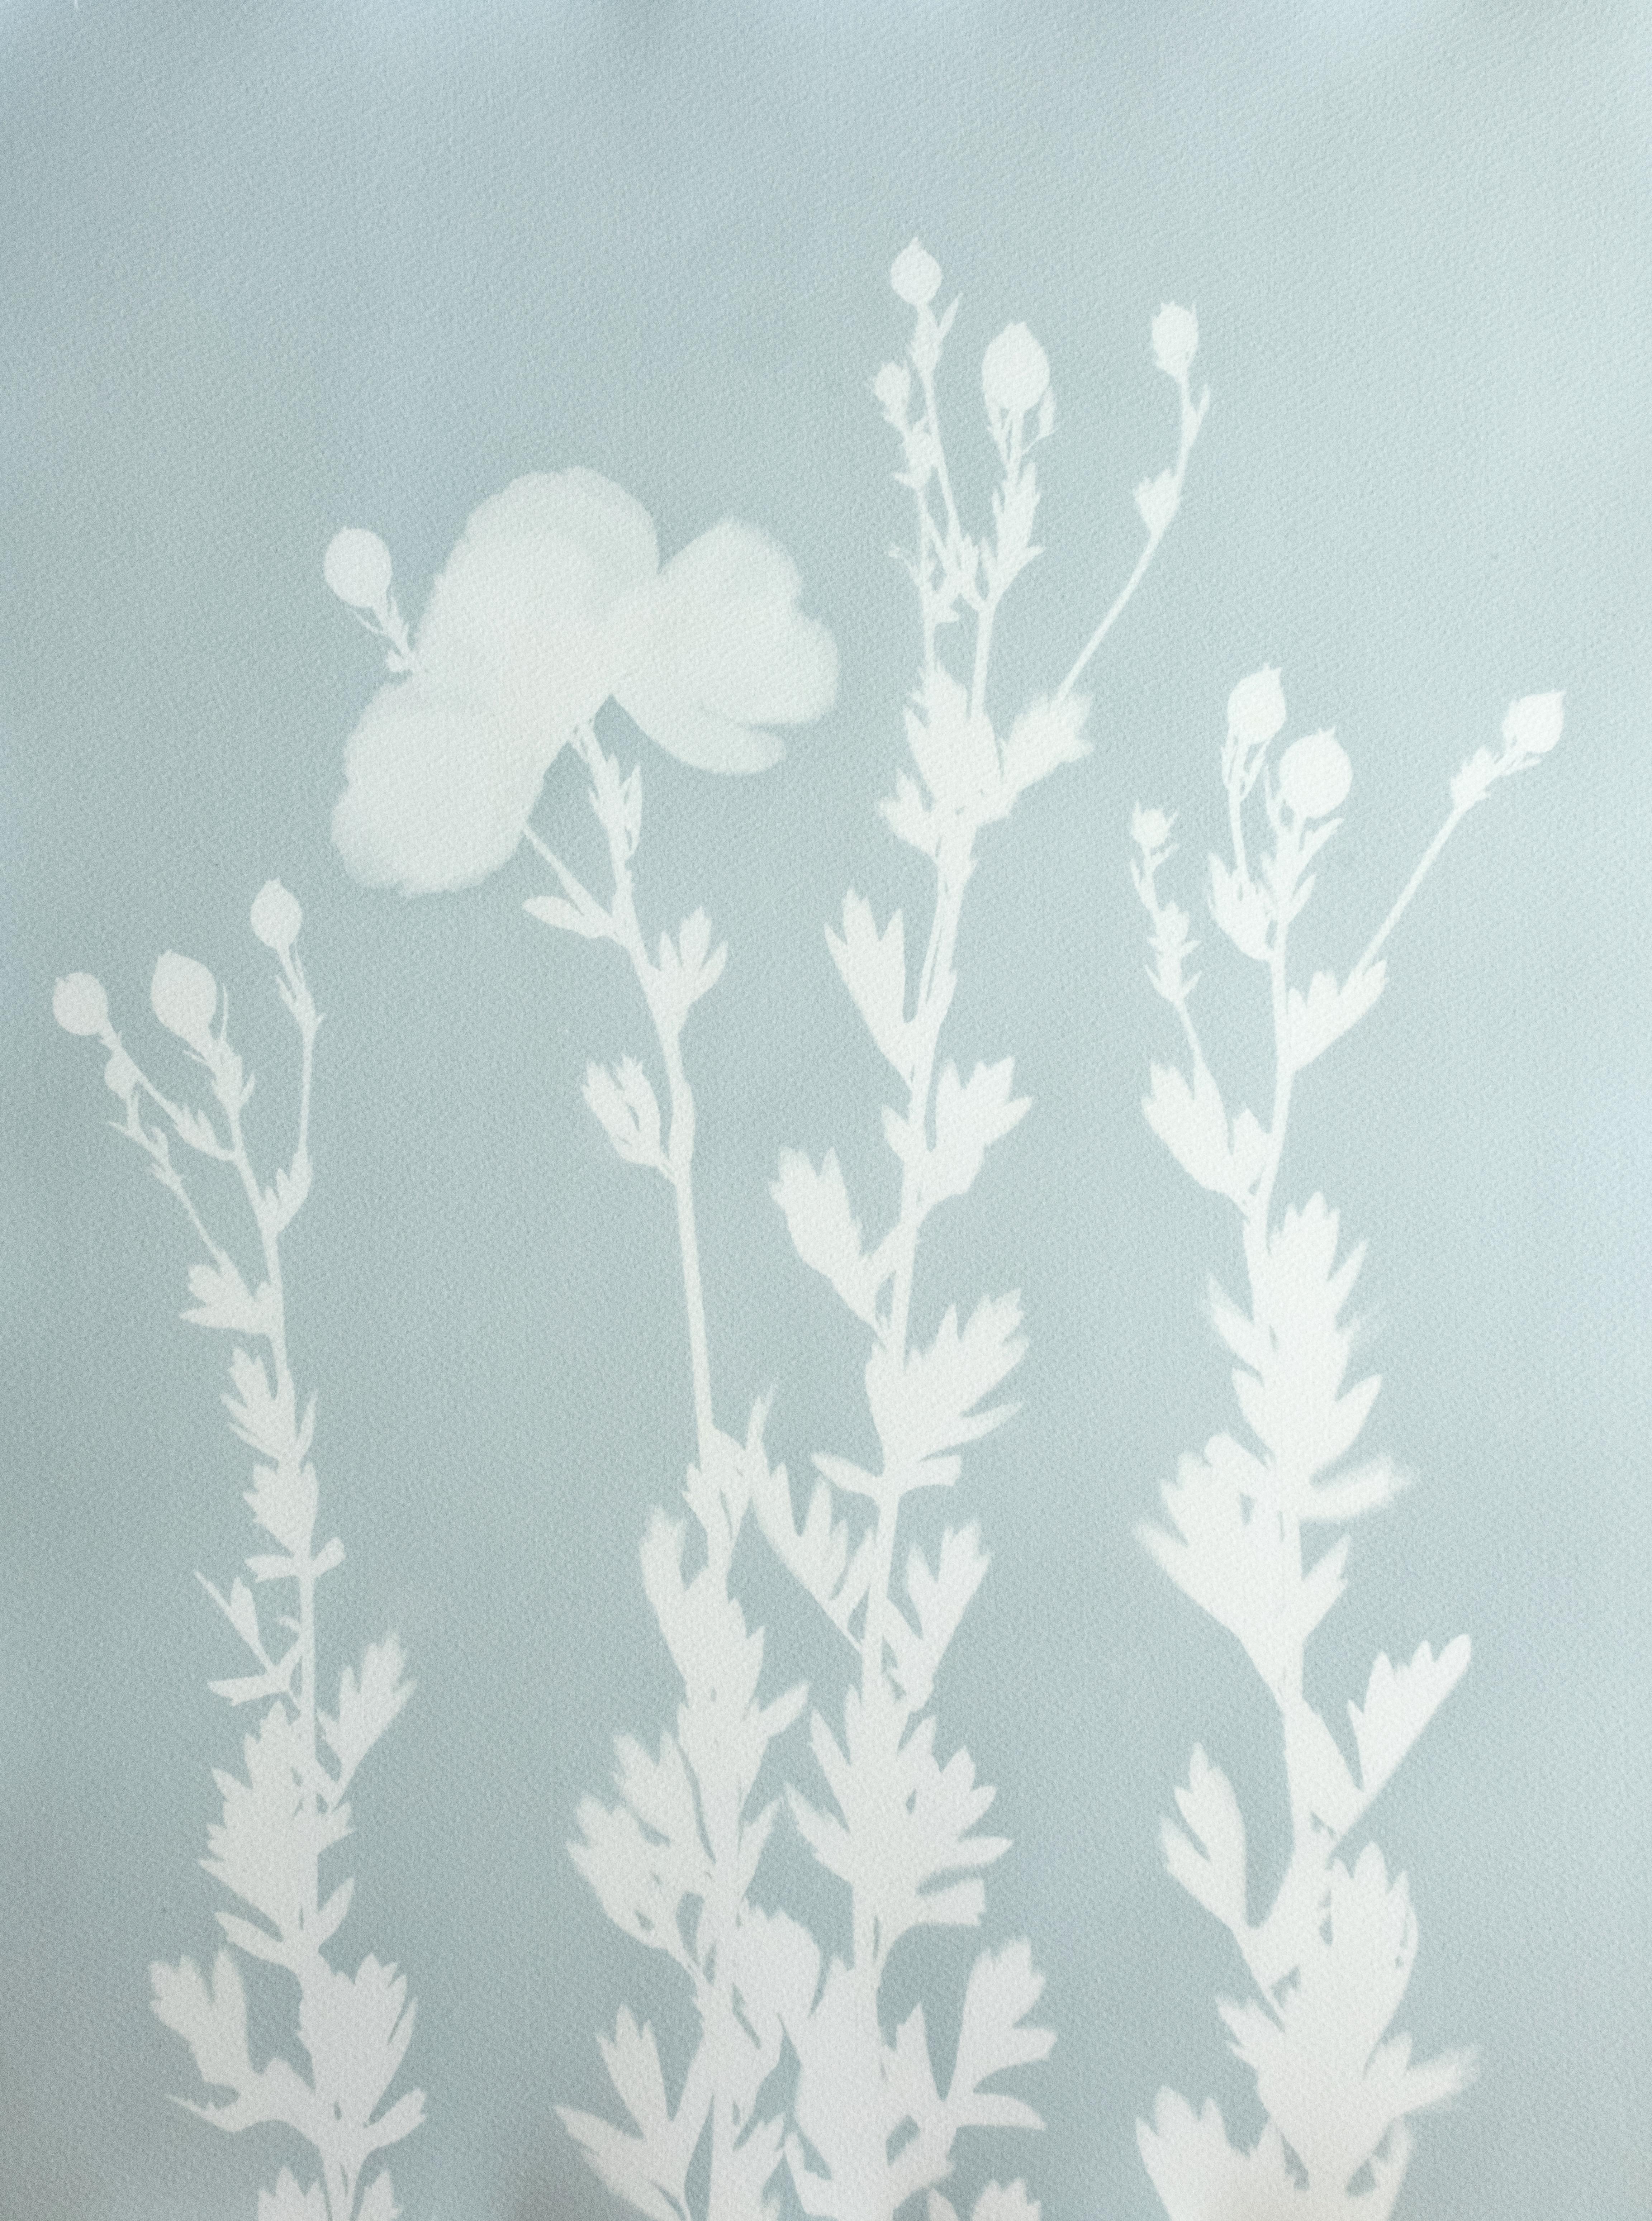 Poupées du matin Misty Morning (cyanotype botanique imprimé à la main, 24 x 18 pouces)